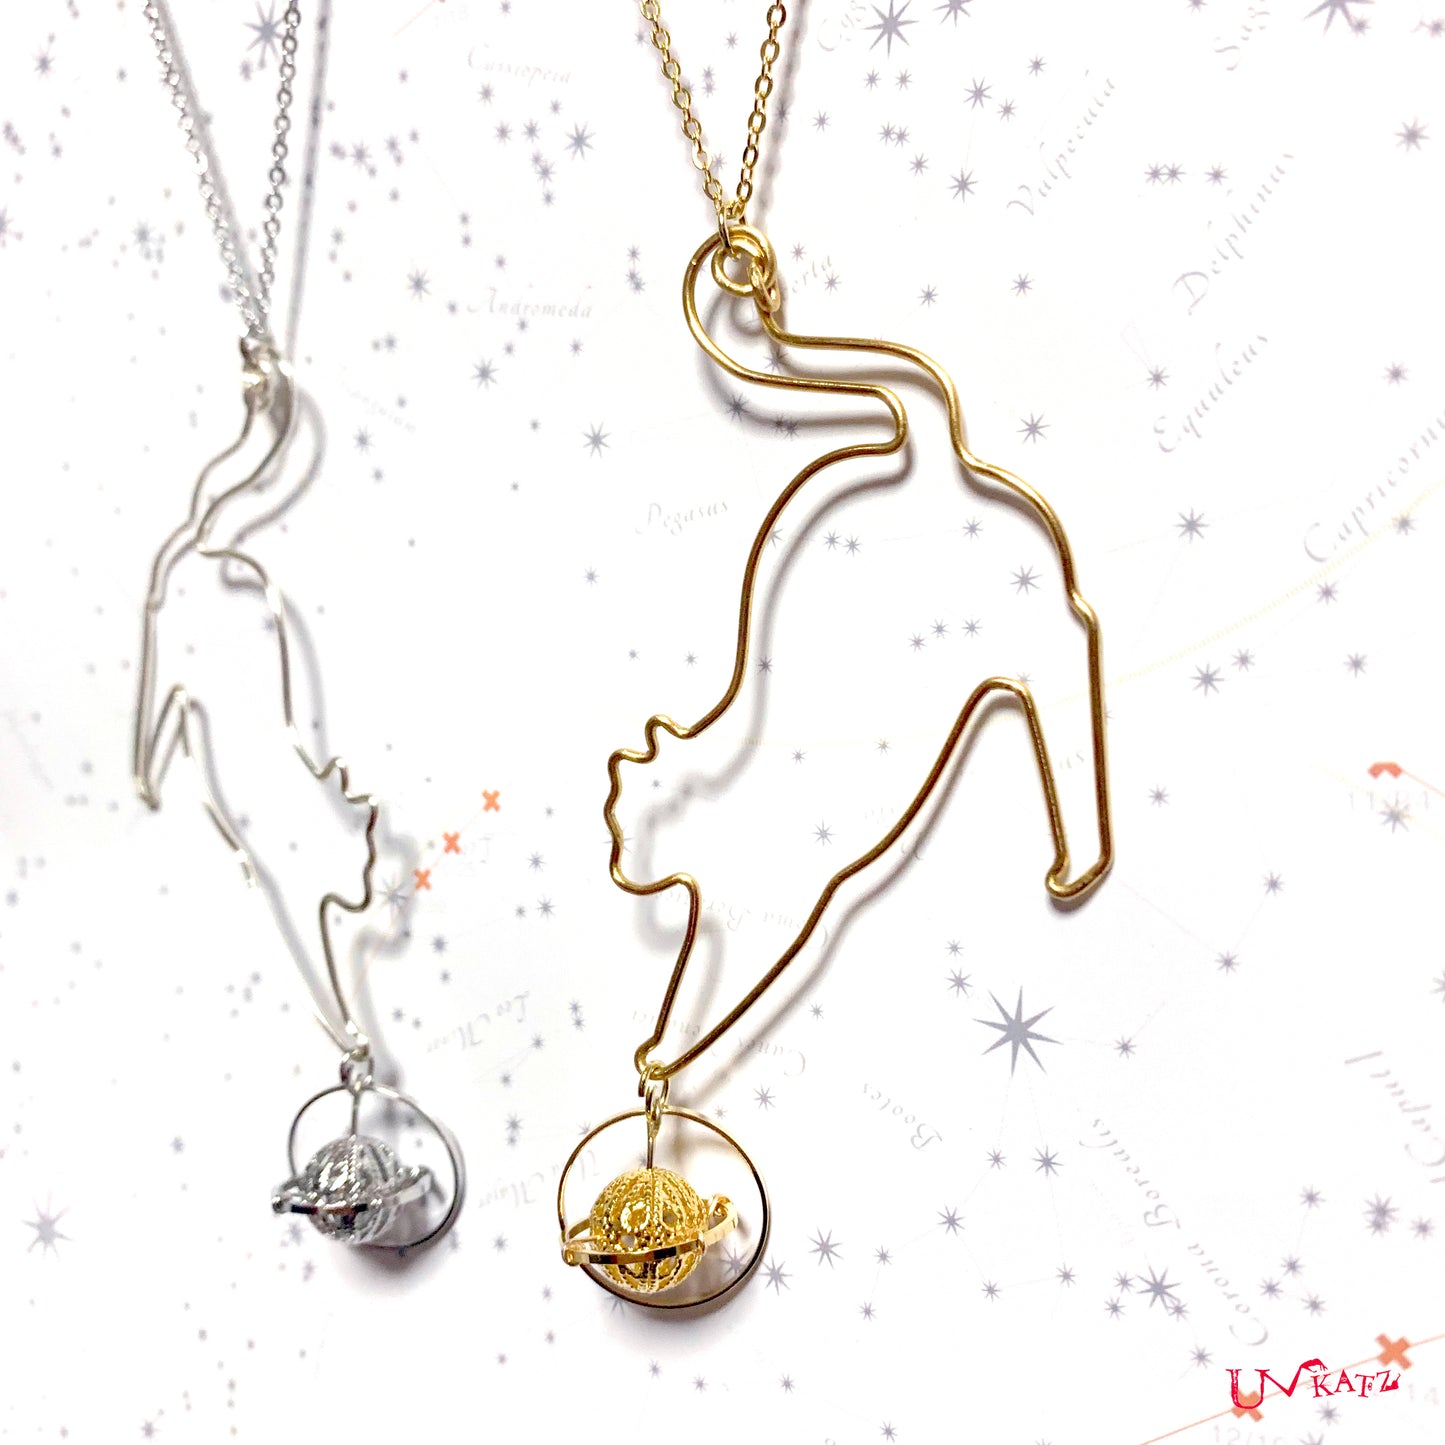 ”土星と猫”ネックレス(50cm｜ゴールド/シルバー)